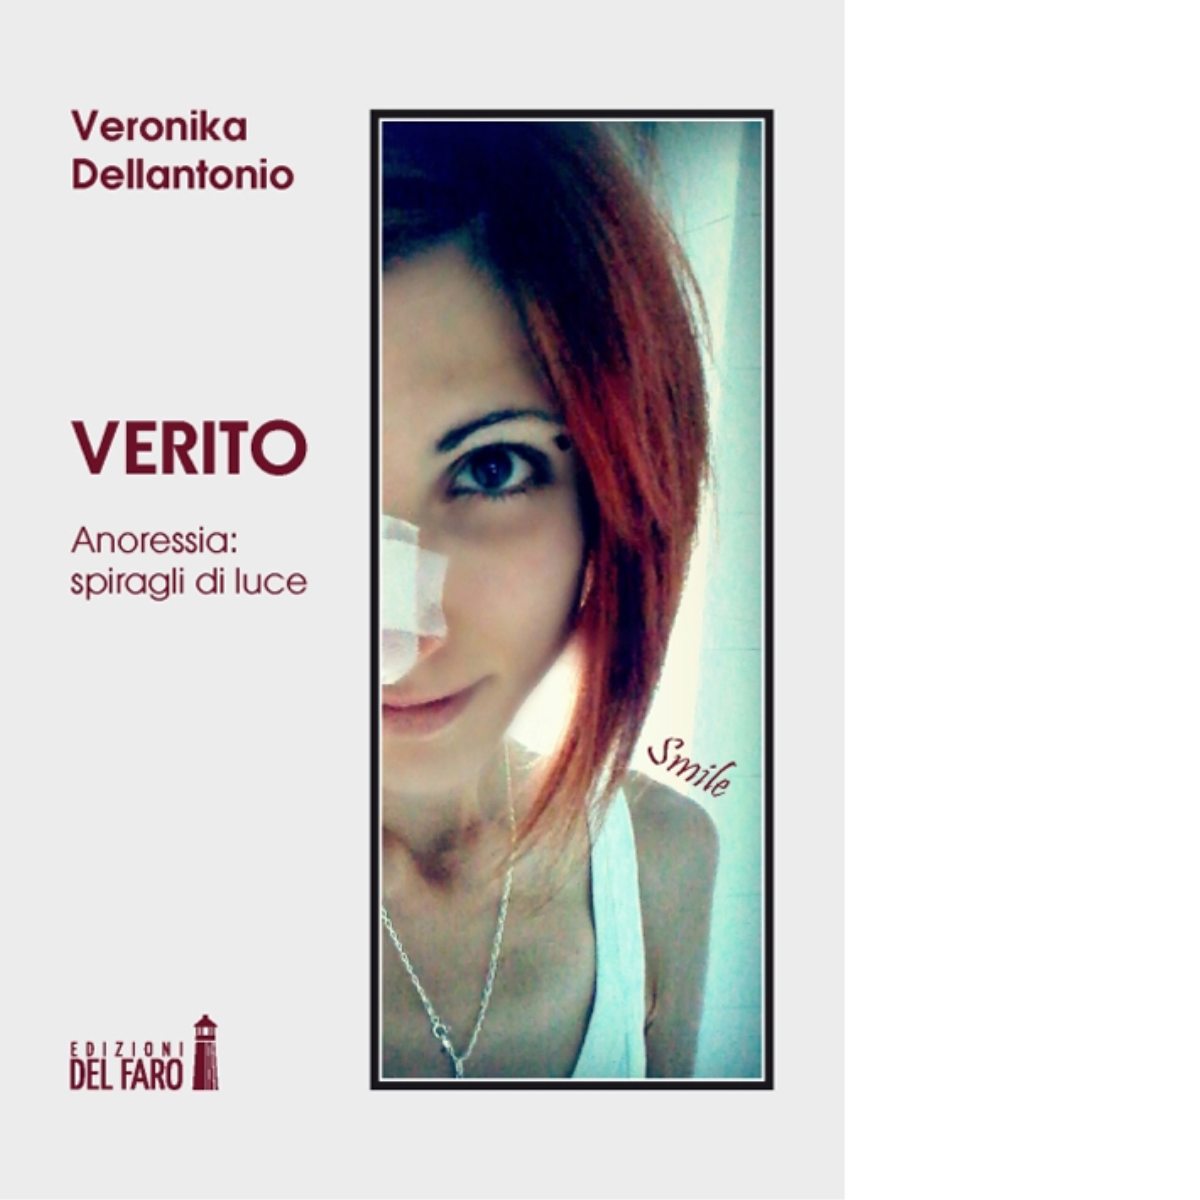 Verito. Anoressia: spiragli di luce di Dellantonio Veronika - Del Faro, 2014